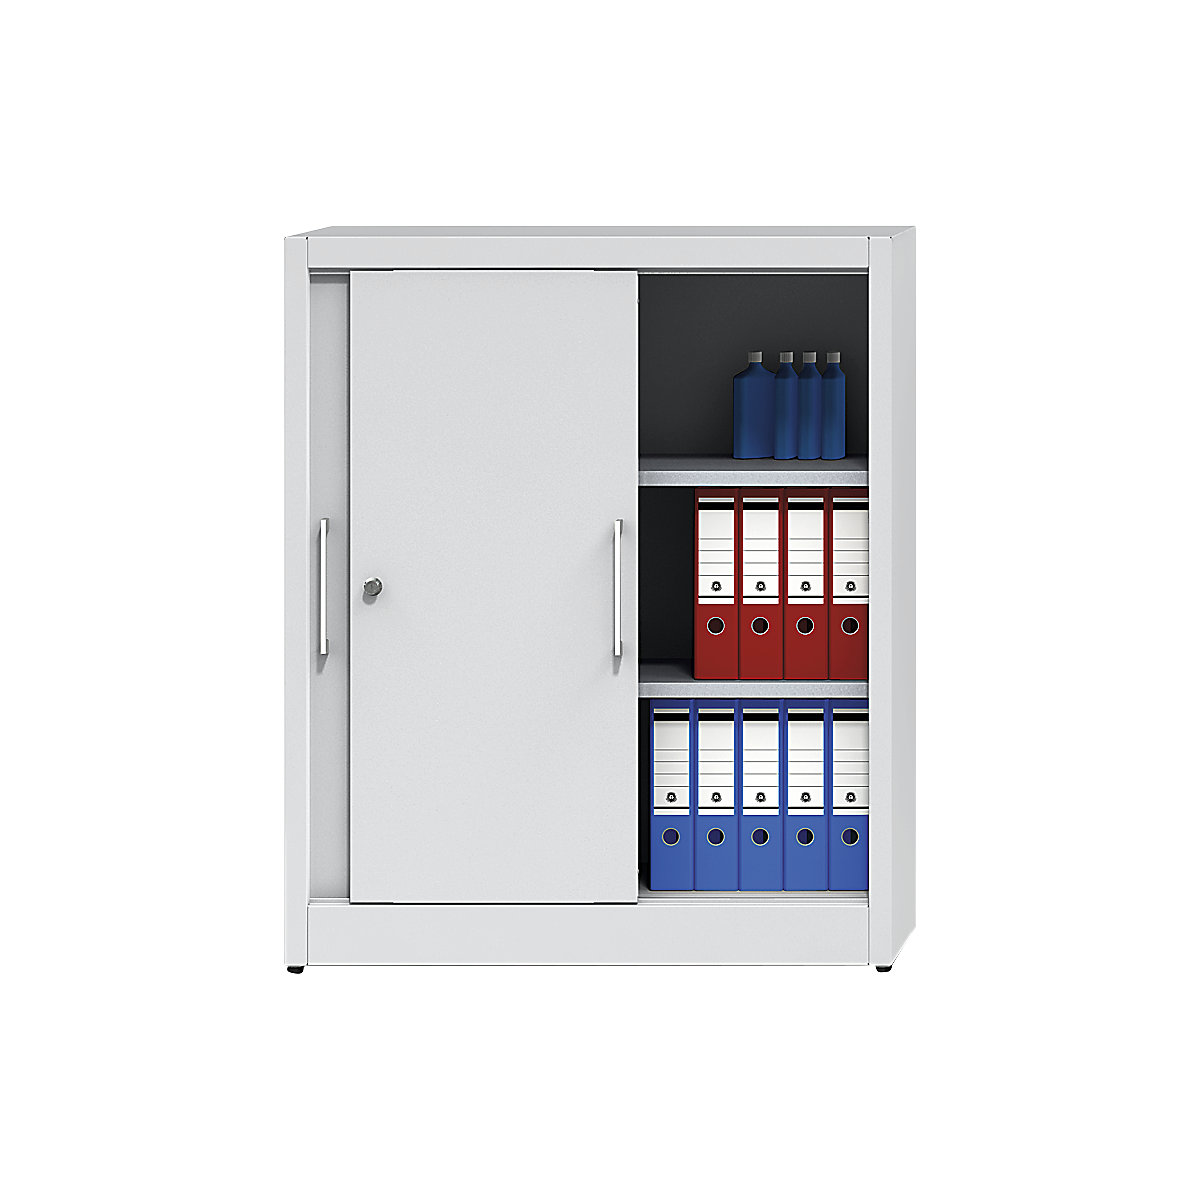 Sliding door cupboard, height 1200 mm – eurokraft pro, with 2 shelves, HxW 1200 x 1000 mm, depth 420 mm, doors in reseda green RAL 6011-5